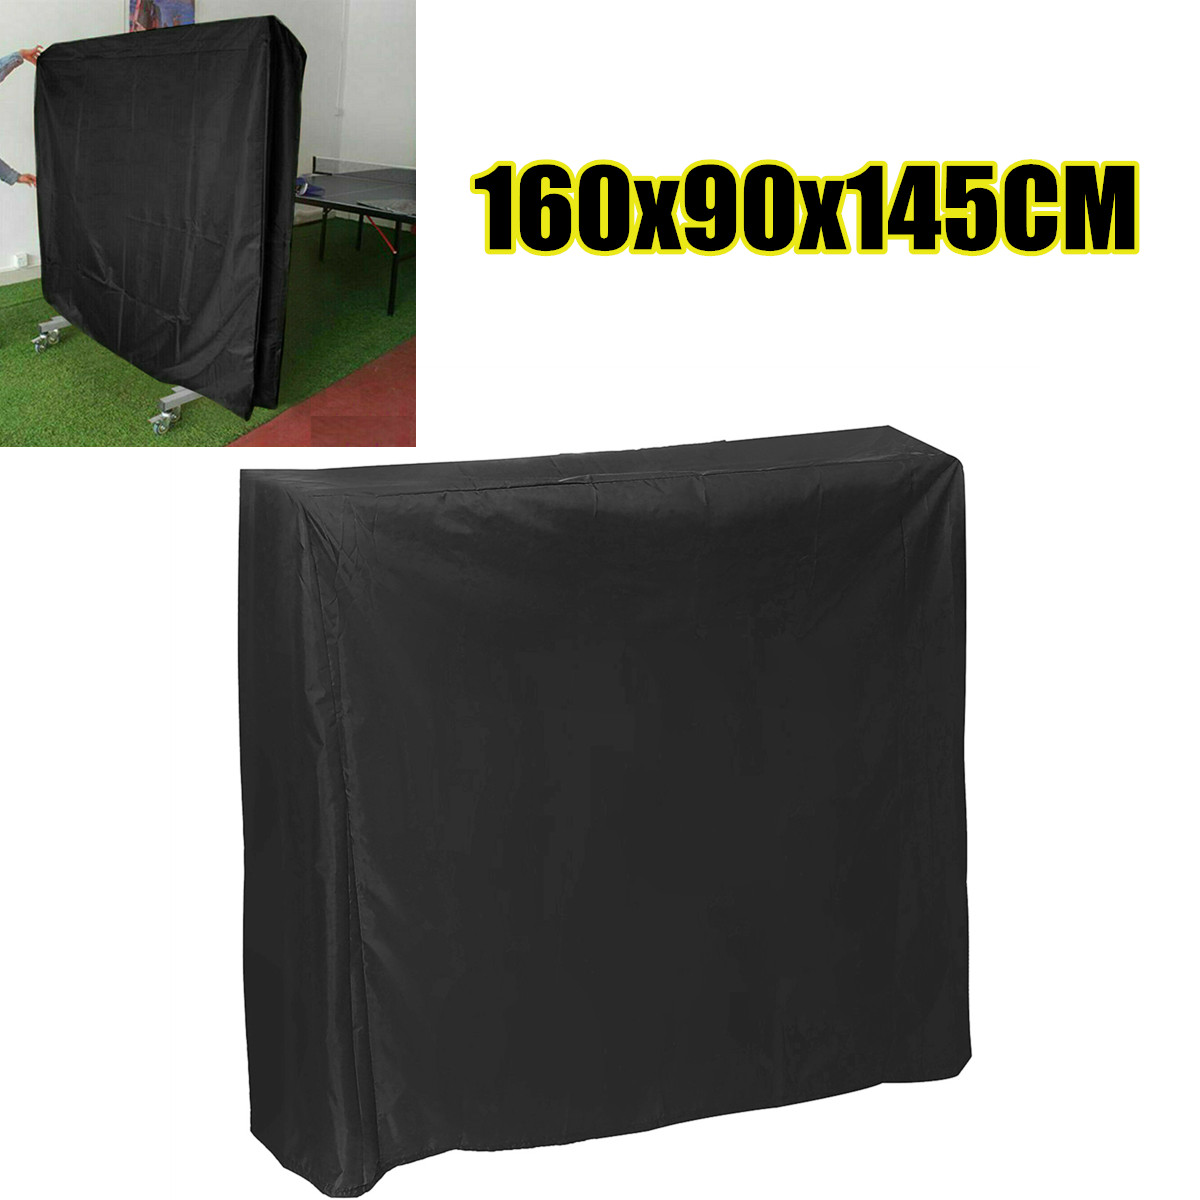 Black-Table-Tennis-Protector-160cm-Waterproof-Dustproof-Ping-Pong-Table-Storage-Cover-1637115-5